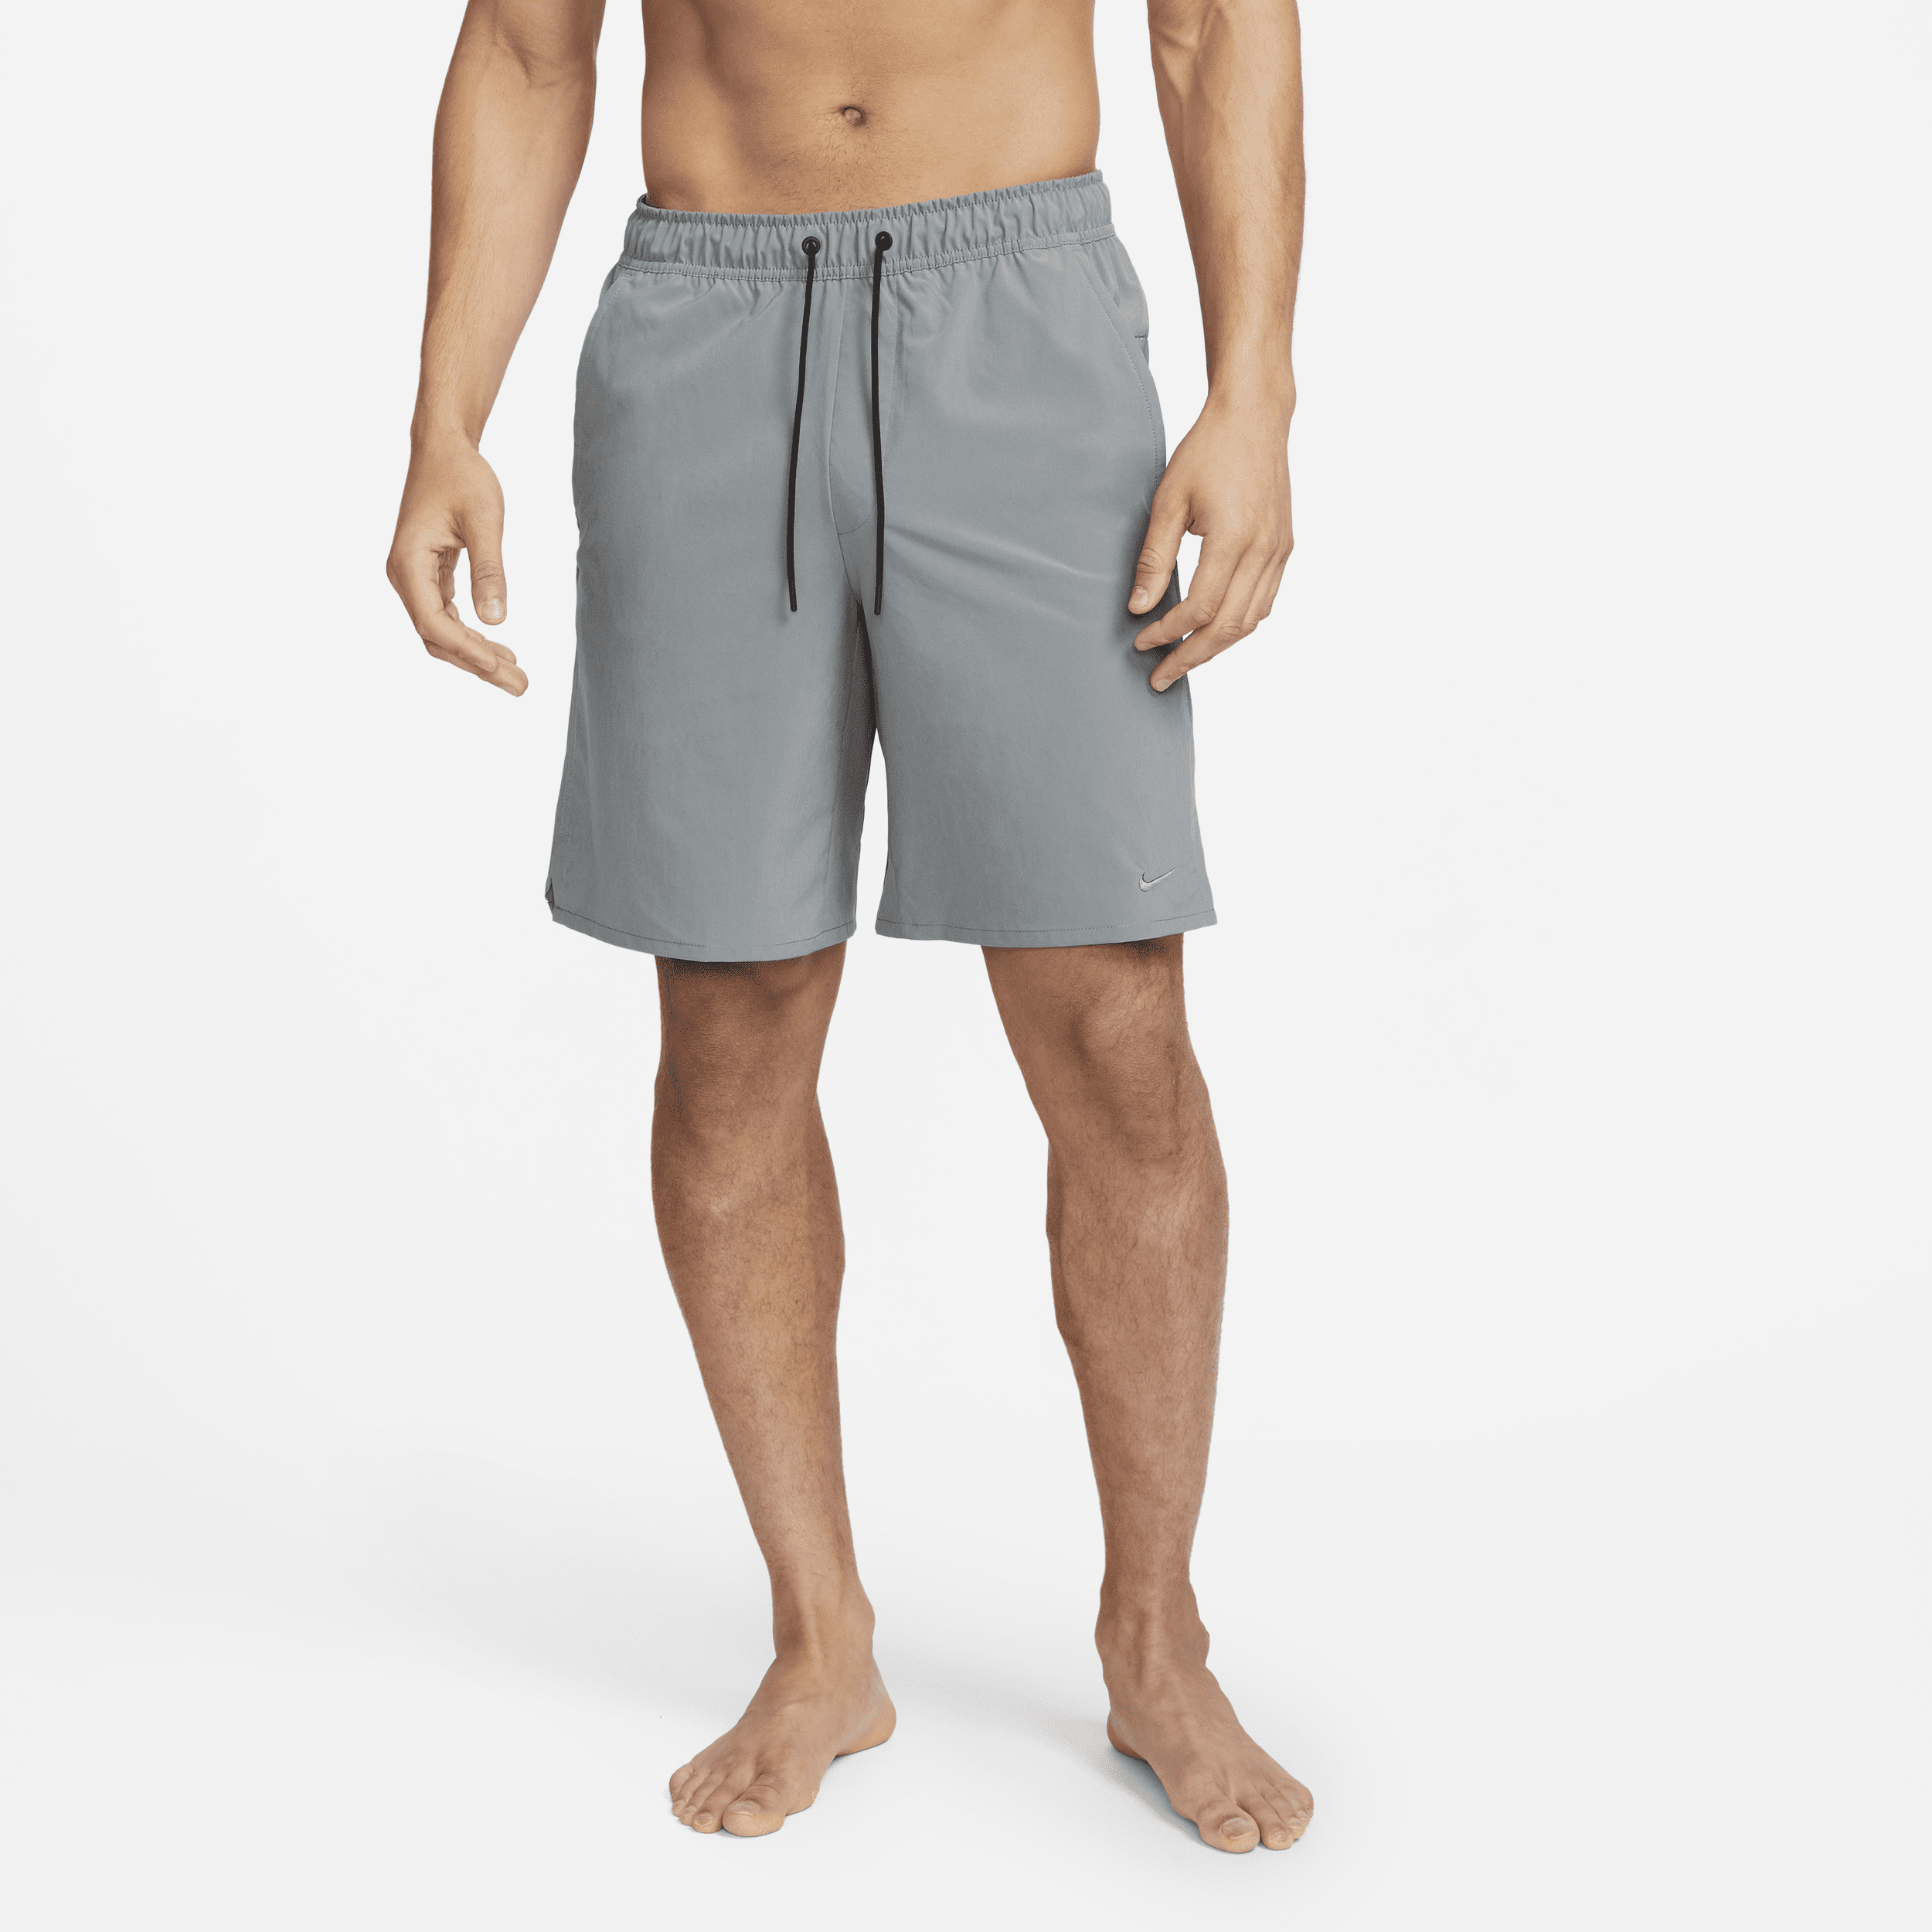 Nike Unlimited Pantalón corto versátil Dri-FIT de 23 cm sin forro - Hombre - Gris